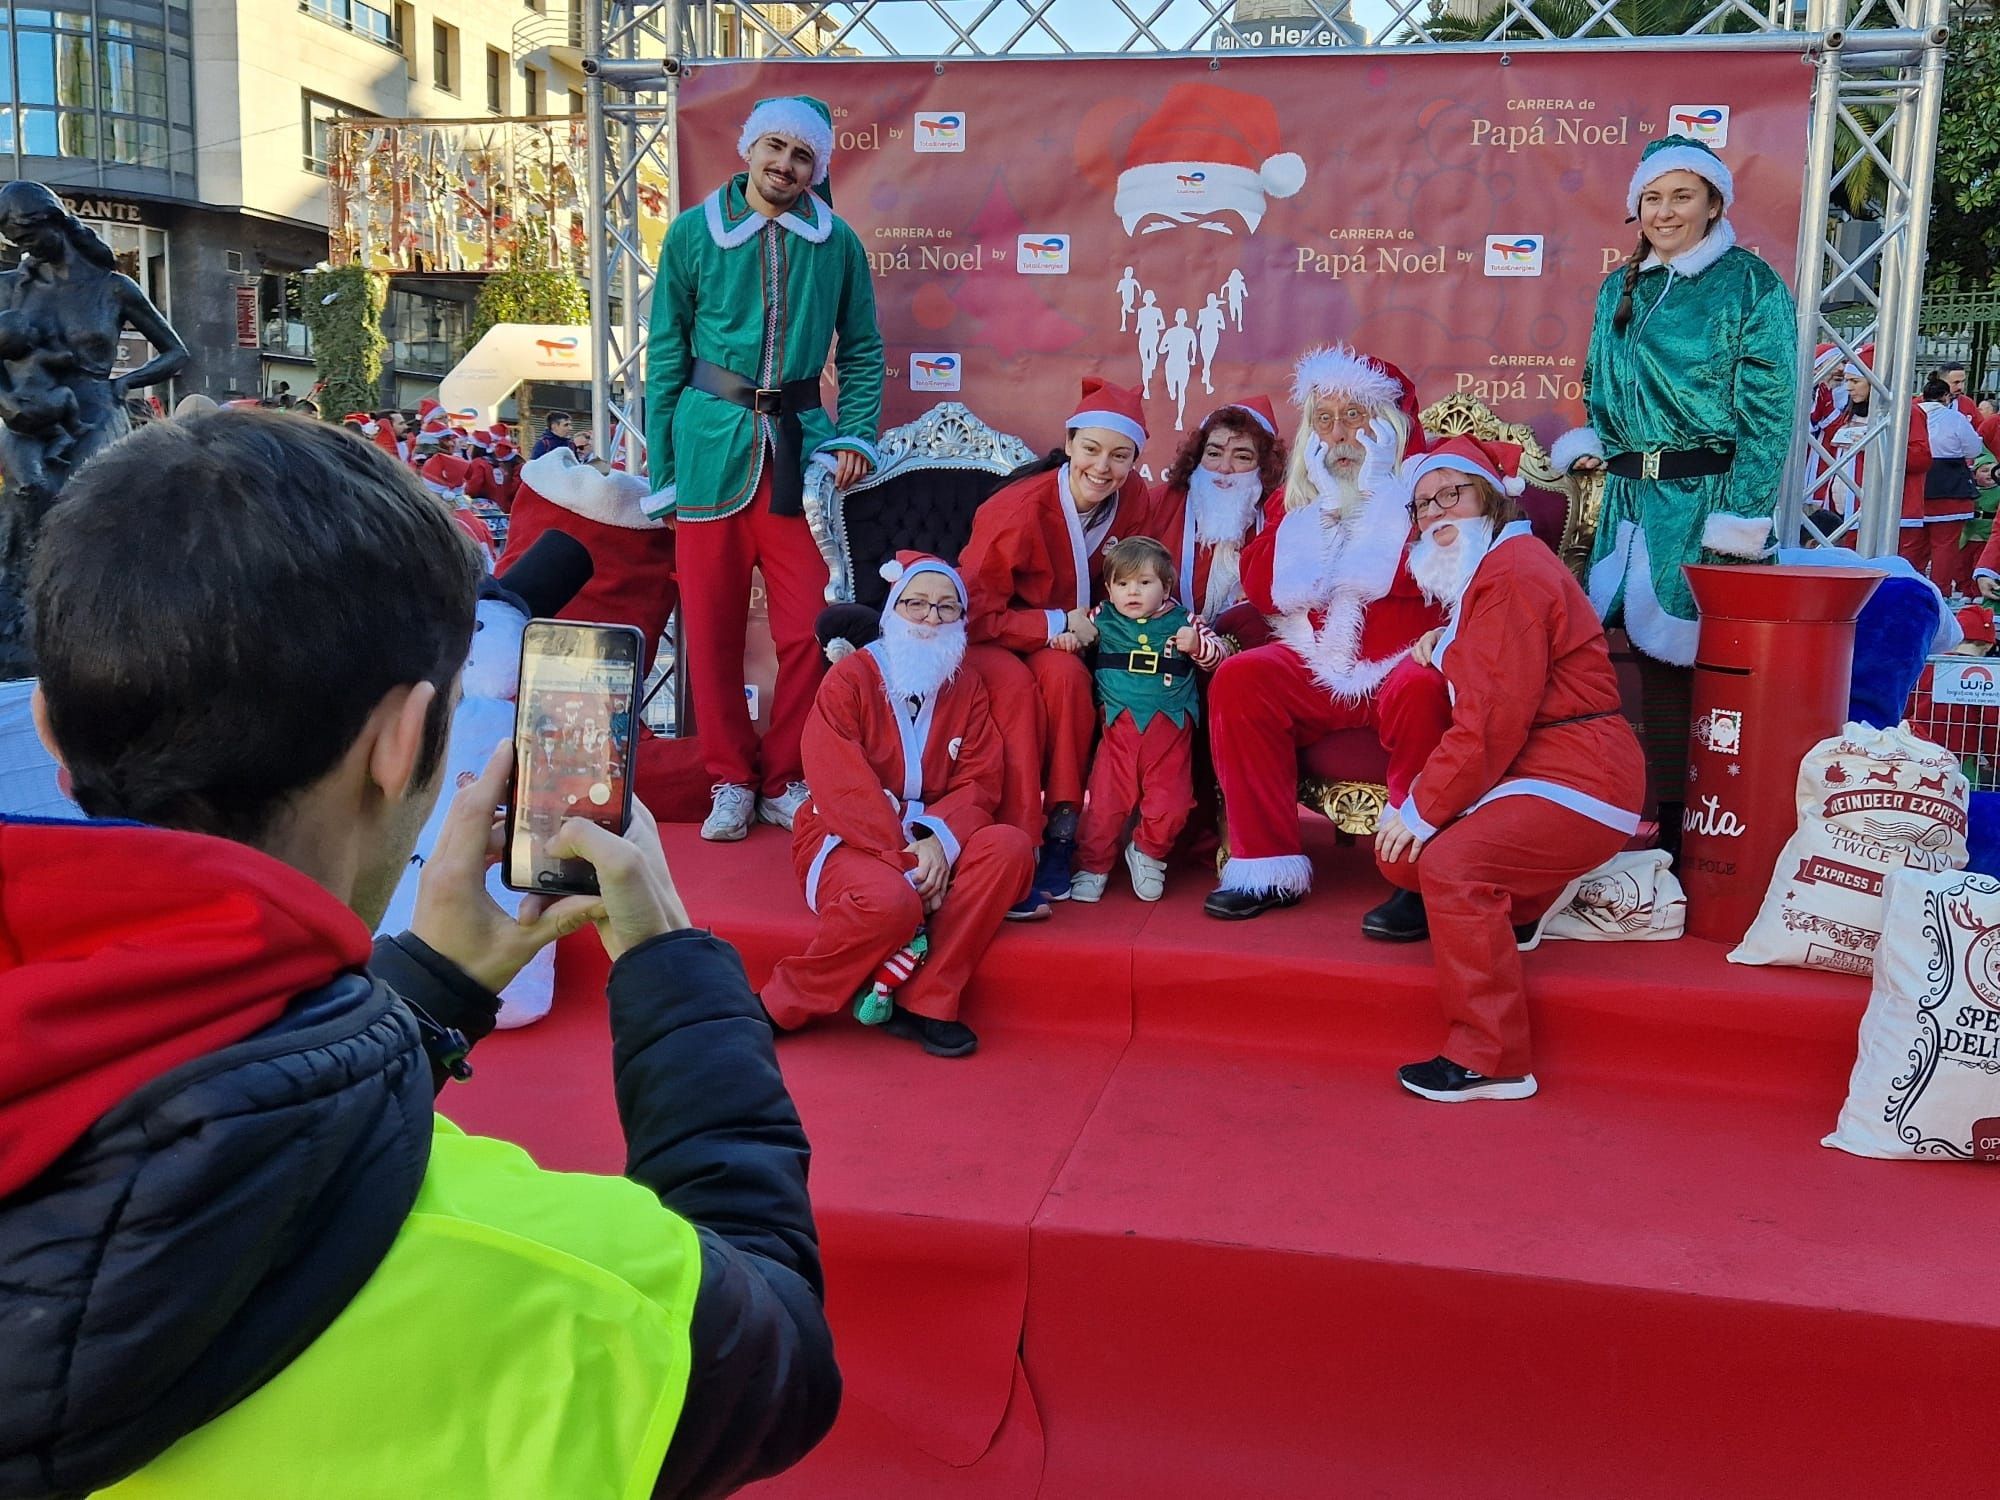 Carrera de elfos, papás y mamás noeles por el centro de Oviedo